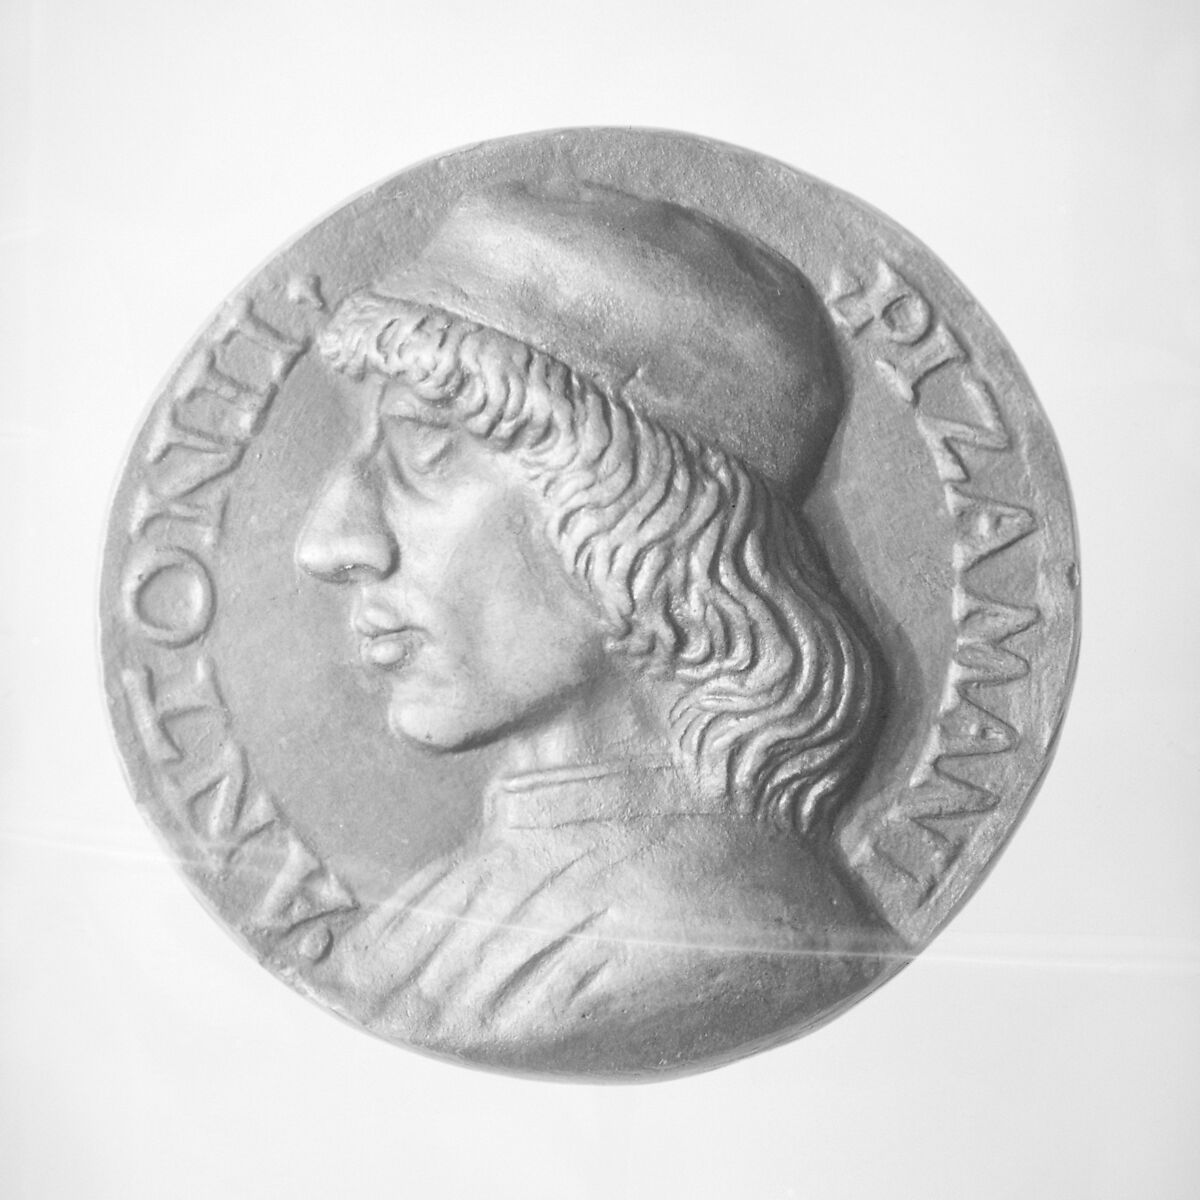 Antonio Pizzamani, Manner of Niccolò Fiorentino (Niccolò di Forzore Spinelli) (Italian, Florence 1430–1514 Florence), Bronze, Italian, Florence 